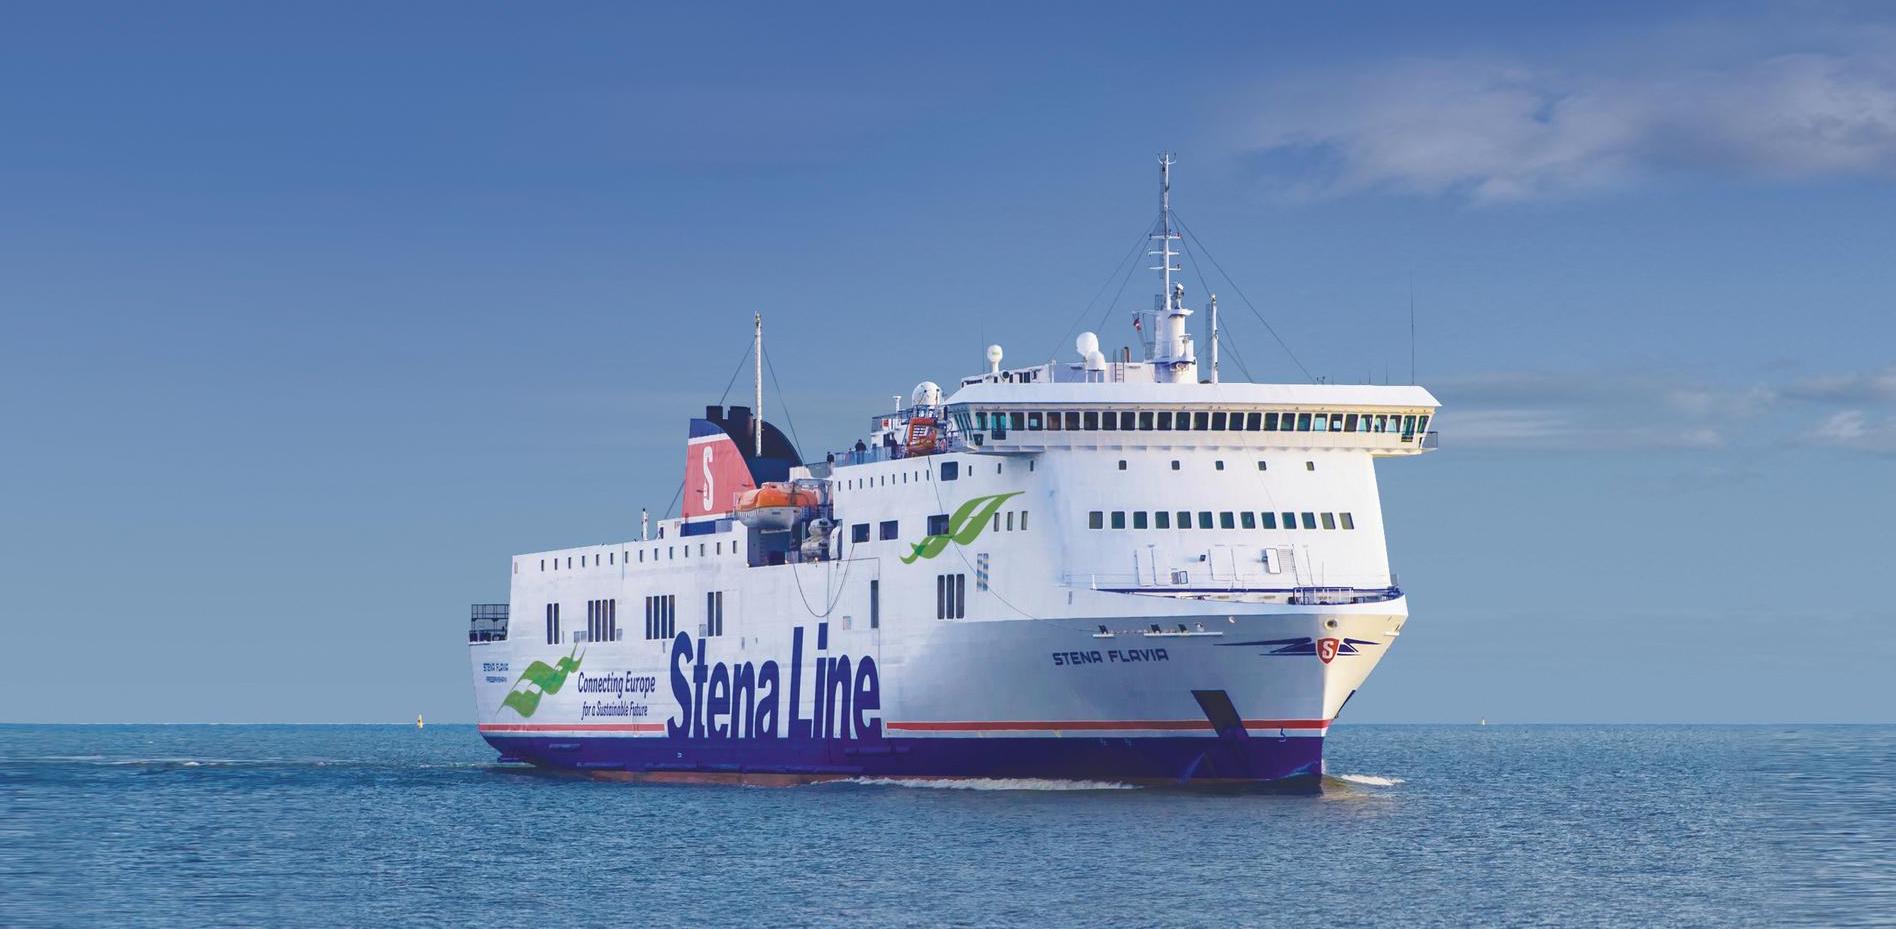 Kuva Stena Line - Stena Flavia aluksesta